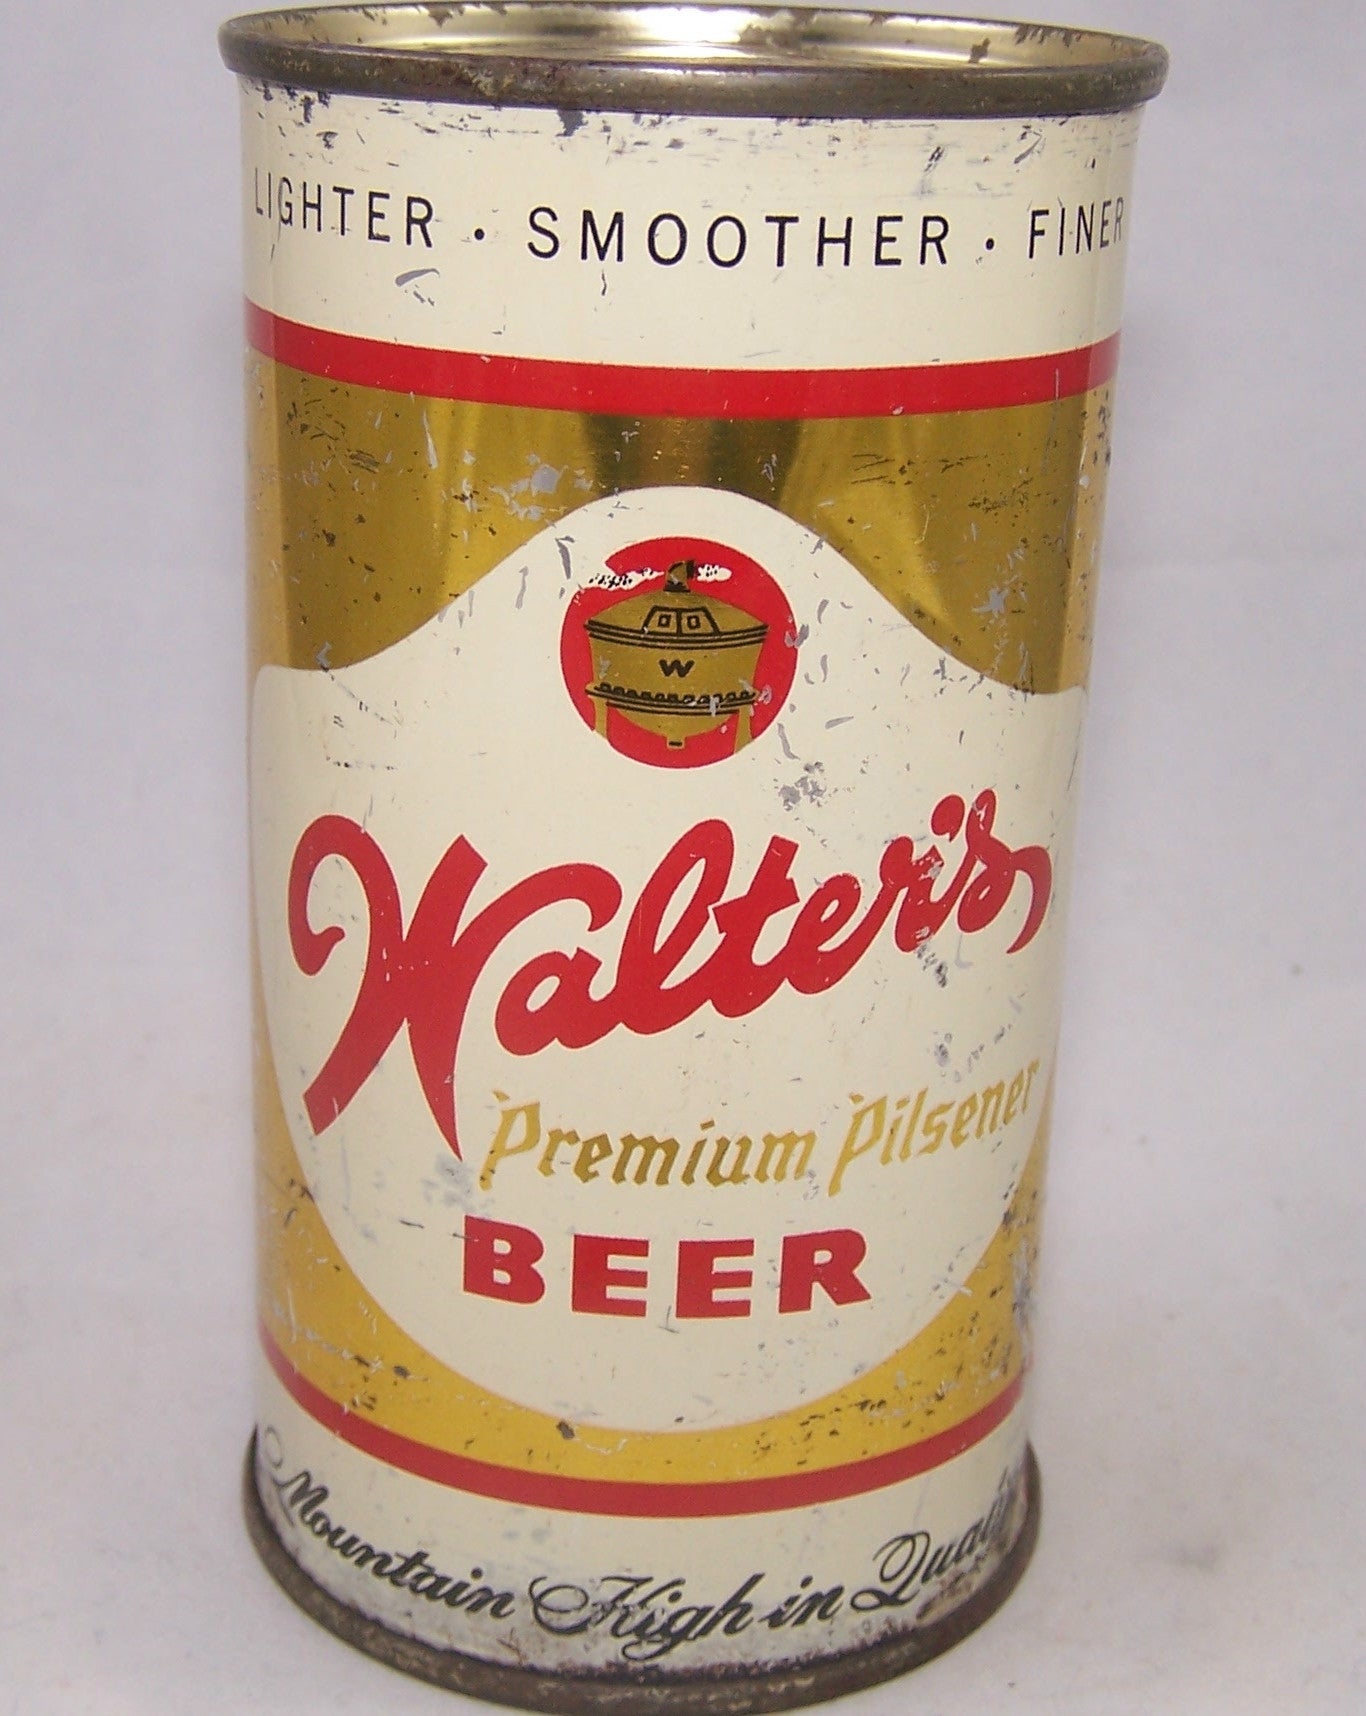 Walter's Premium Pilsener Beer, USBC 144-17, Grade 1- Sold on 03/22/17